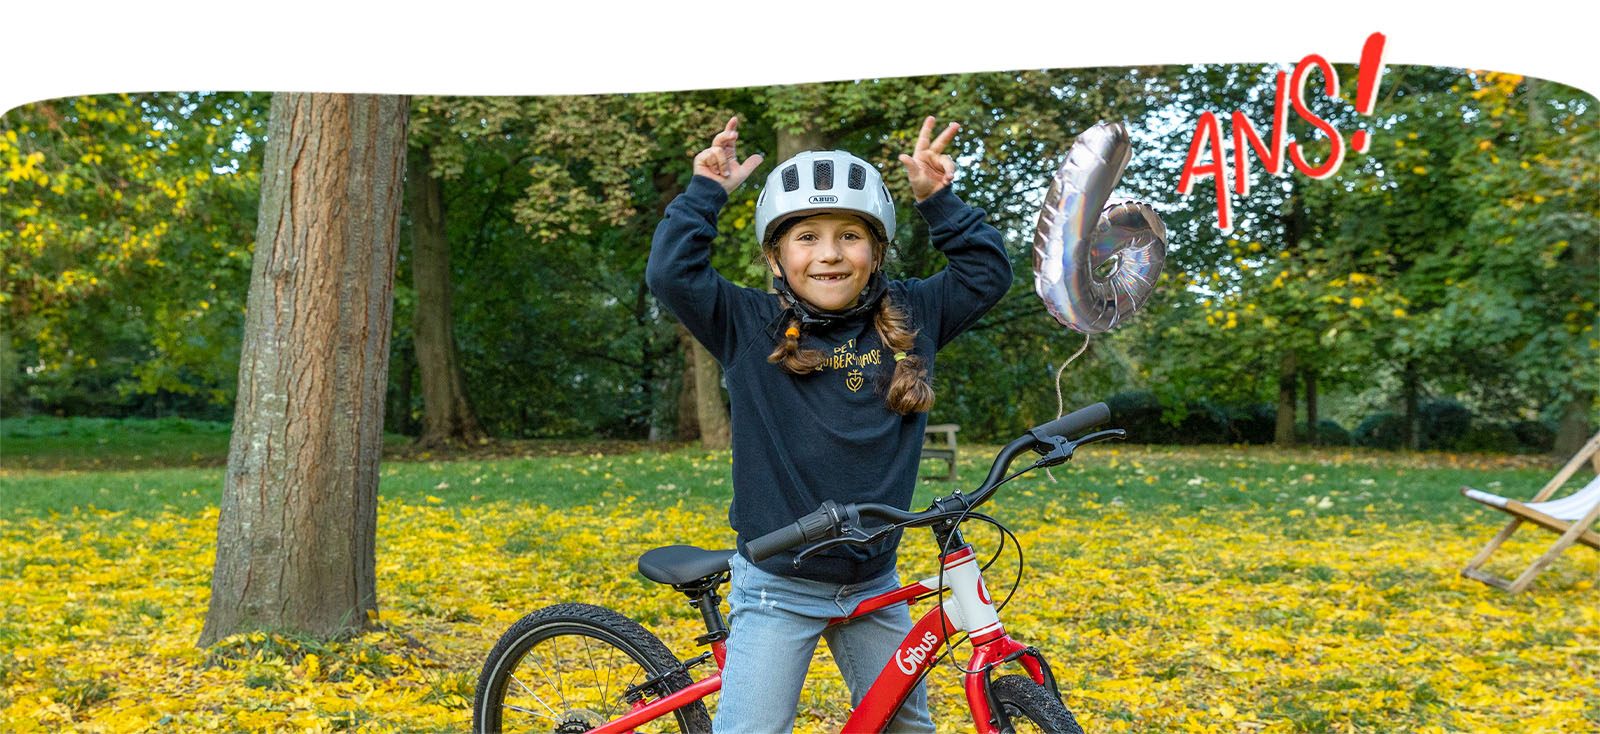 Comment bien choisir un vélo pour enfant et autres conseils !